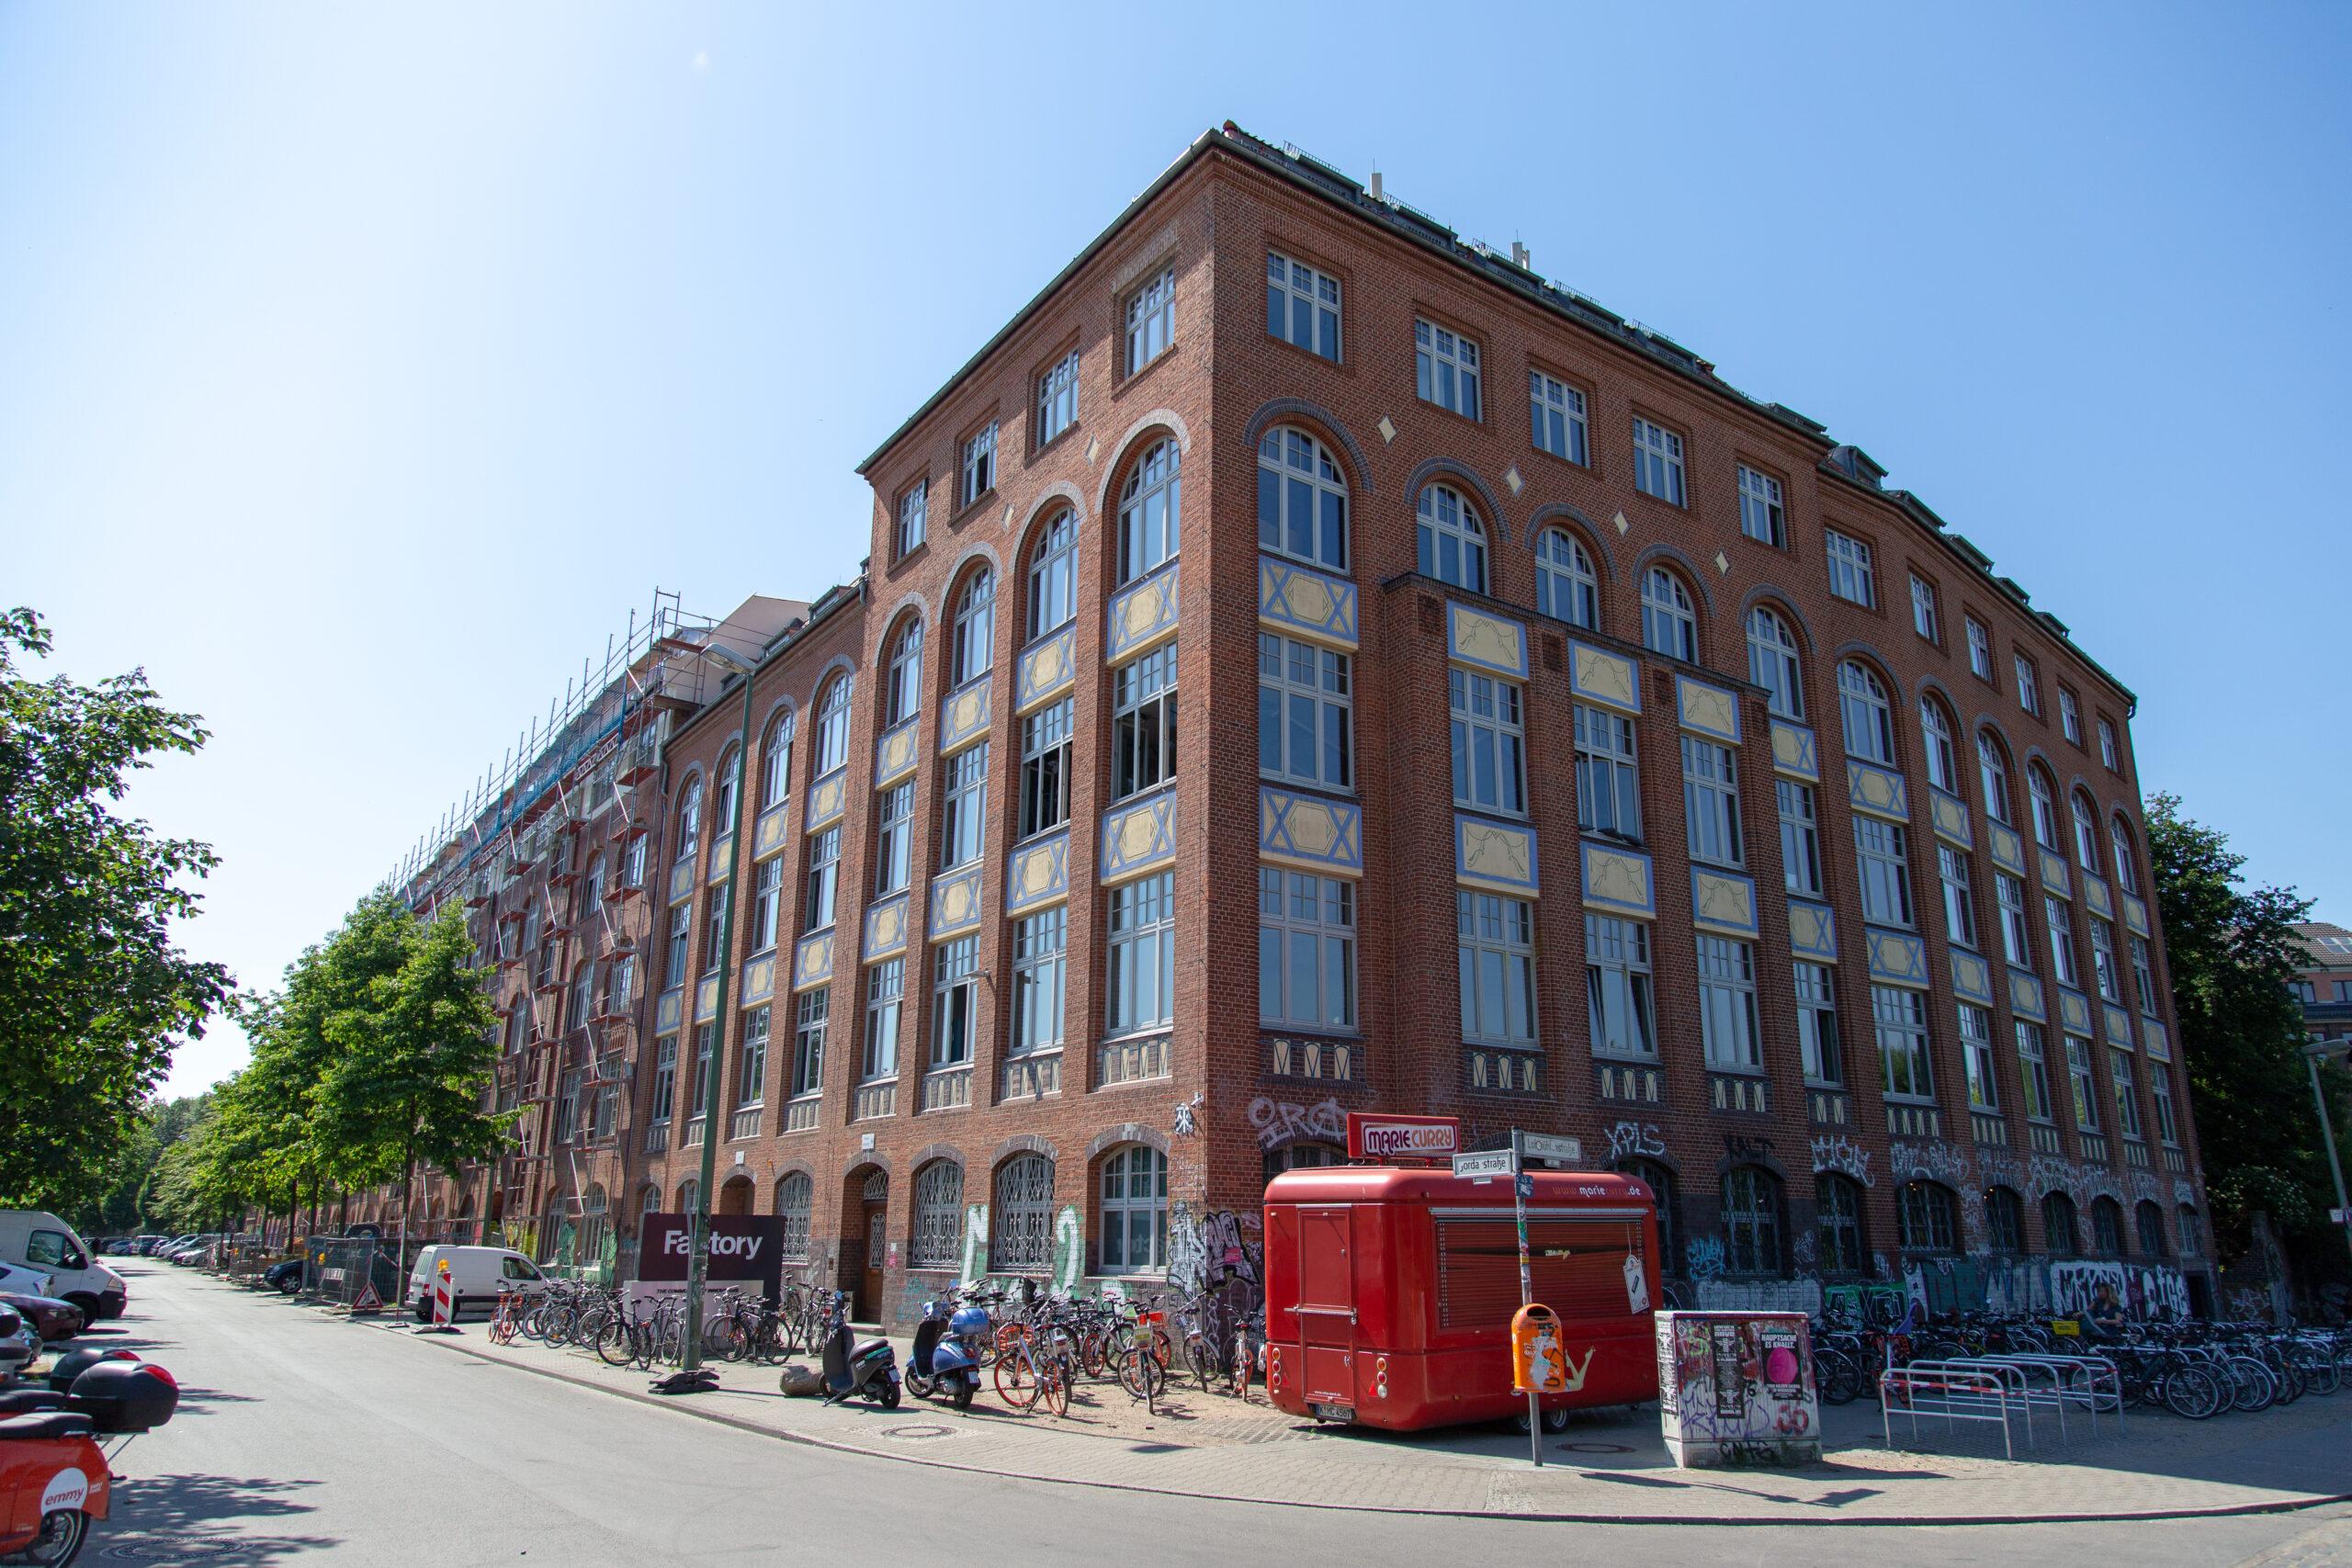 Factory Berlin kündigt Neugestaltung und strategisches Rebranding an